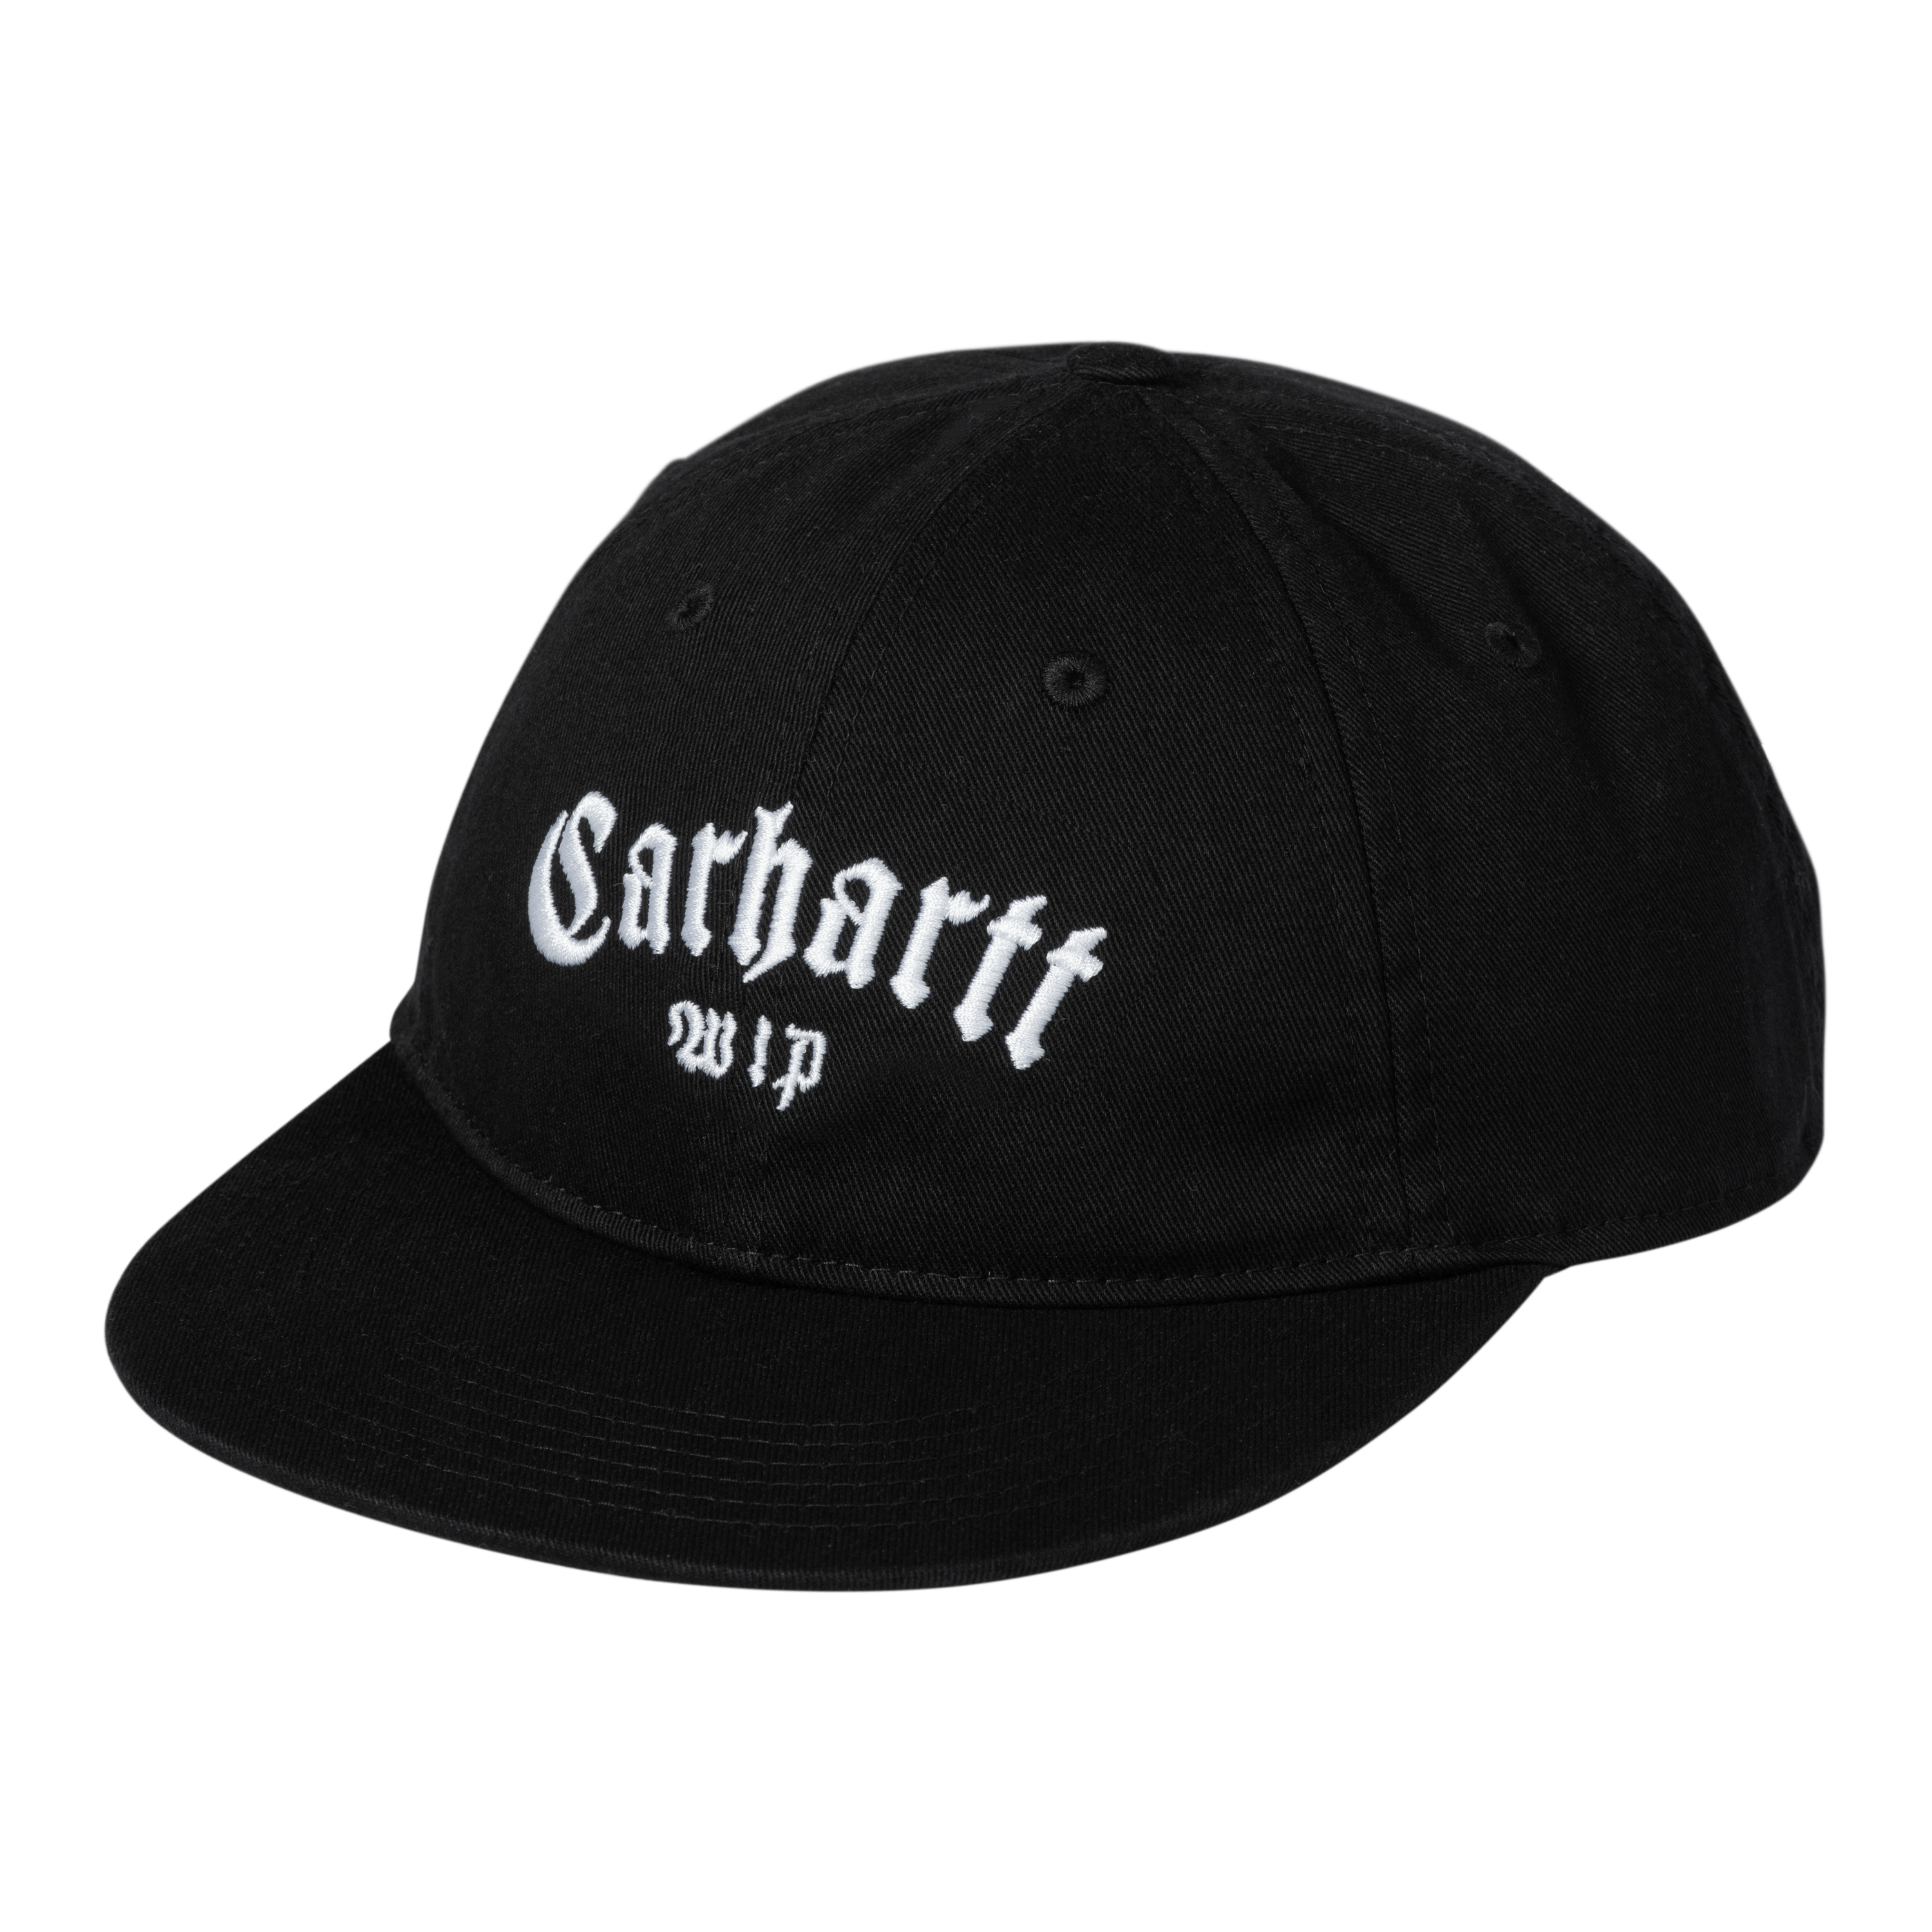 CARHARTT Carhartt BACKLEY - Casquette Homme bleu - Private Sport Shop